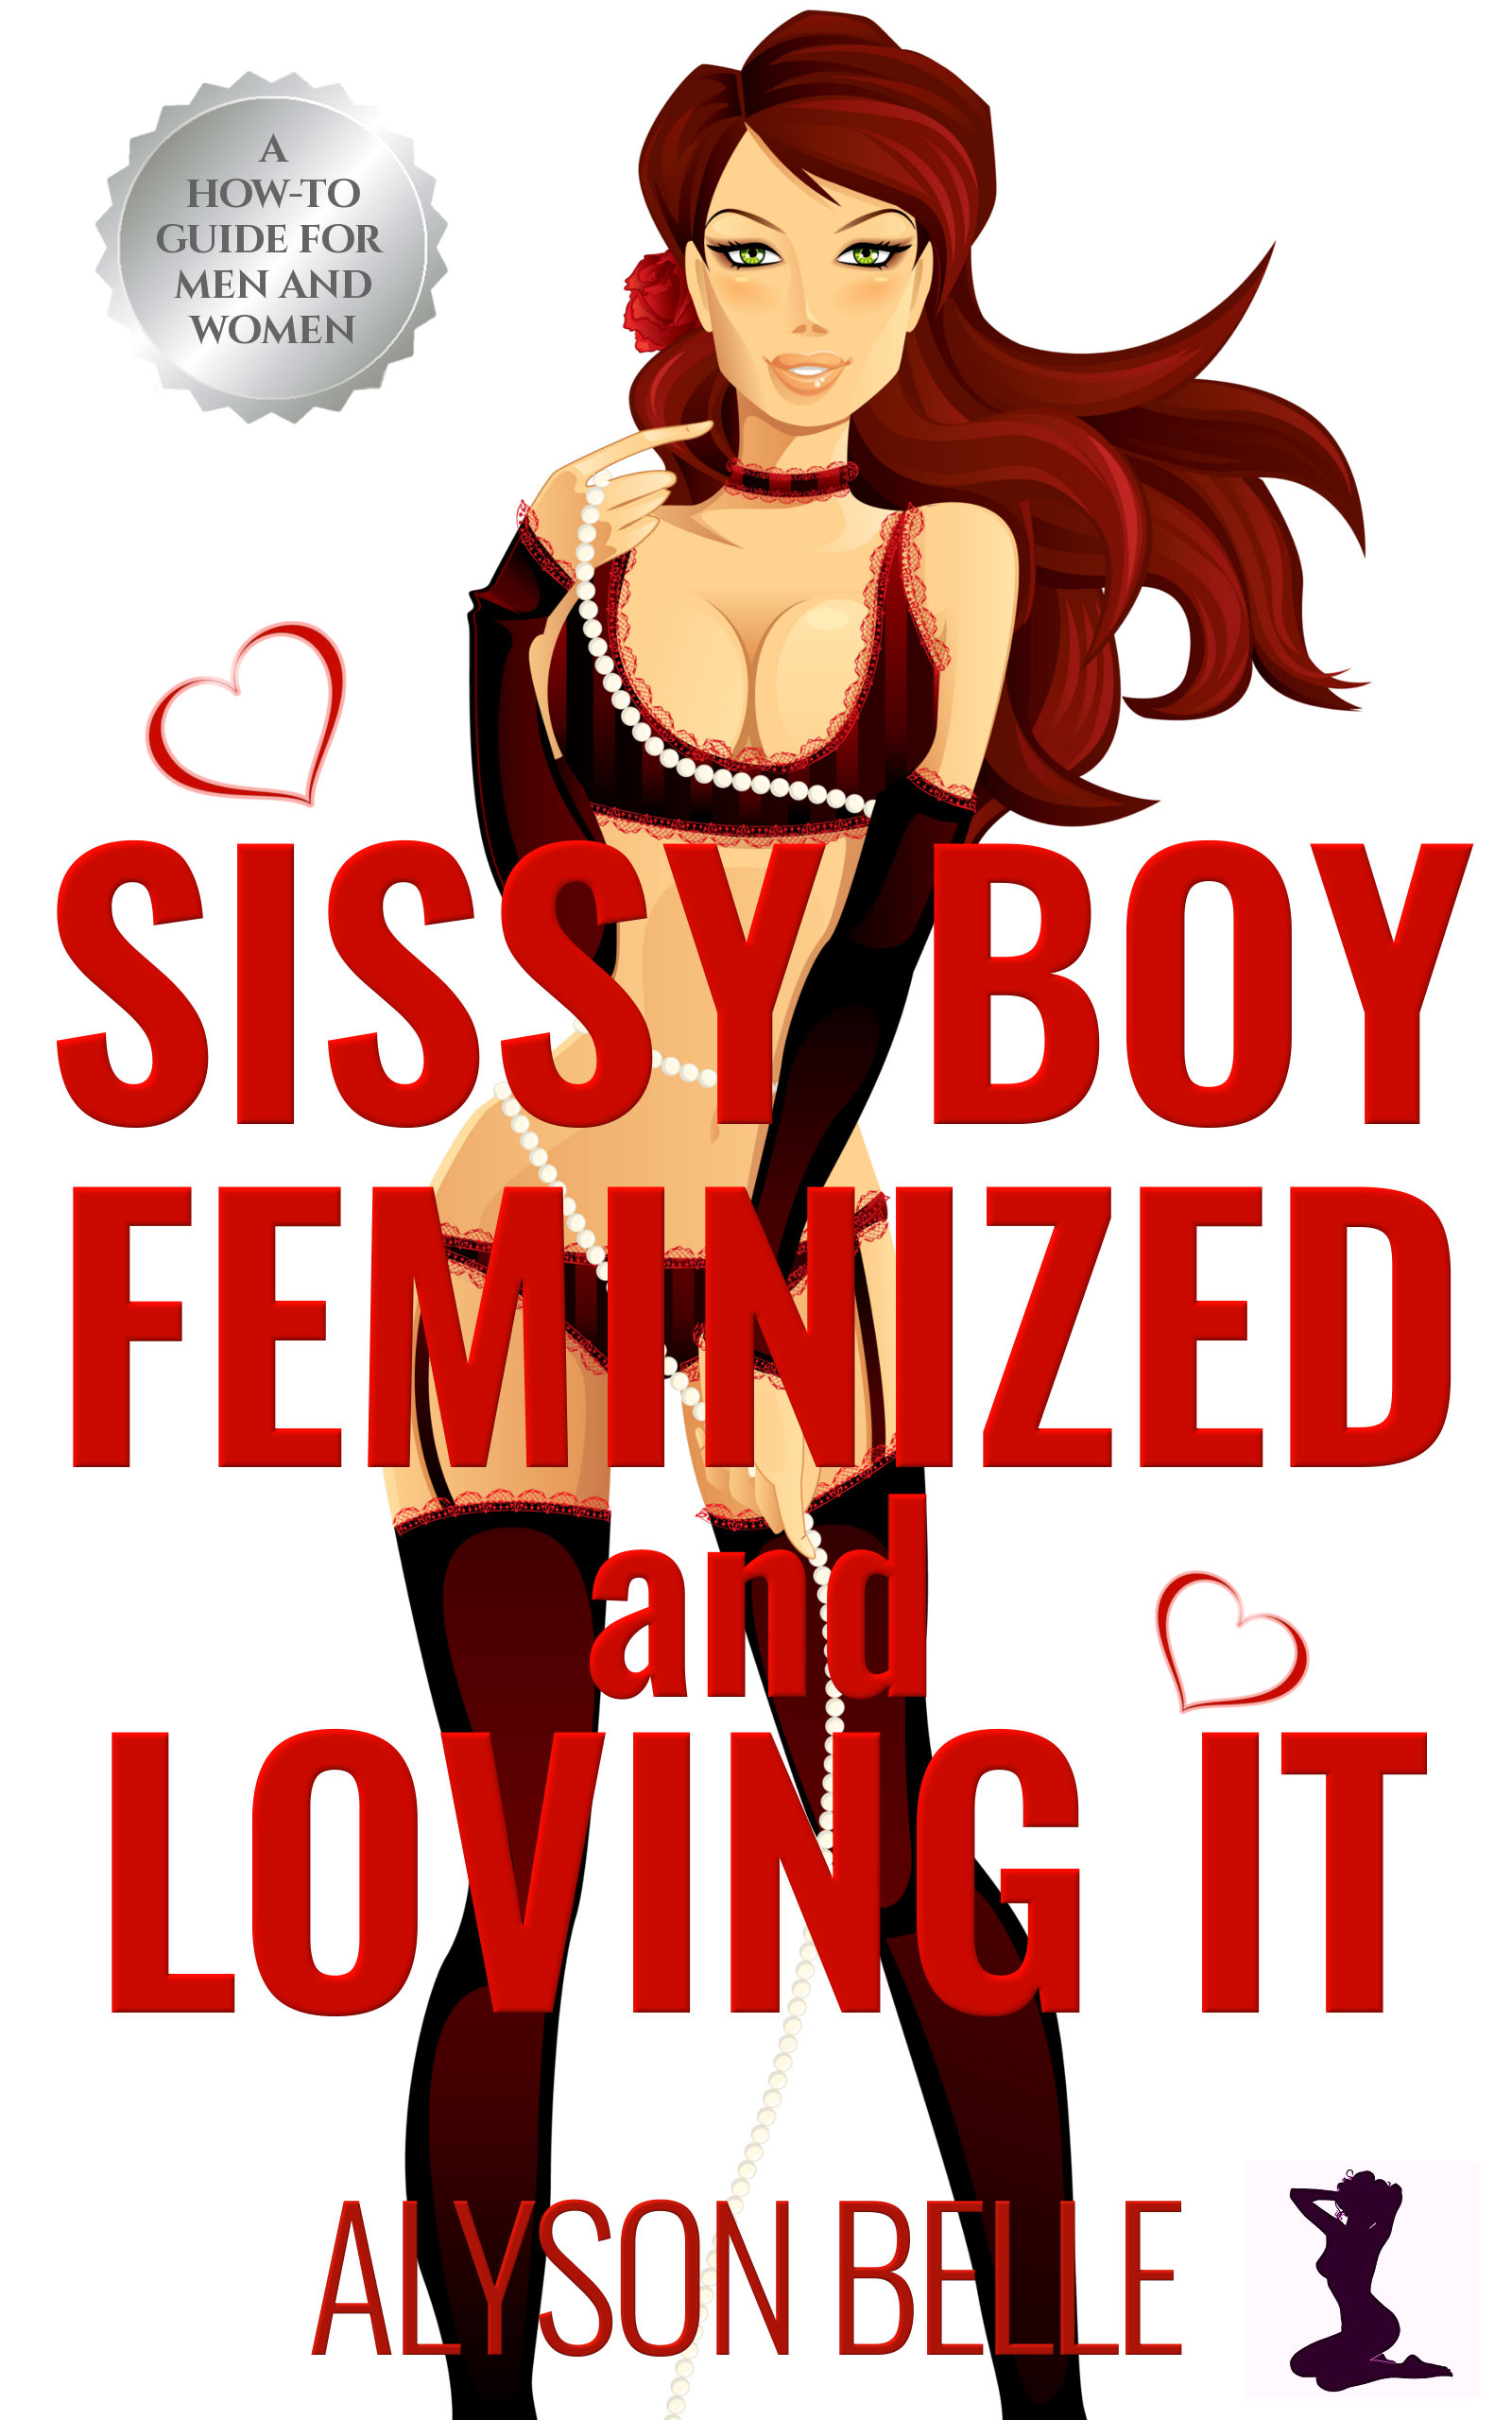 Sexy Sissy Boy Cartoon Porn - Sissy Boy: Feminized and Loving It â€“ Alyson Belle Productions